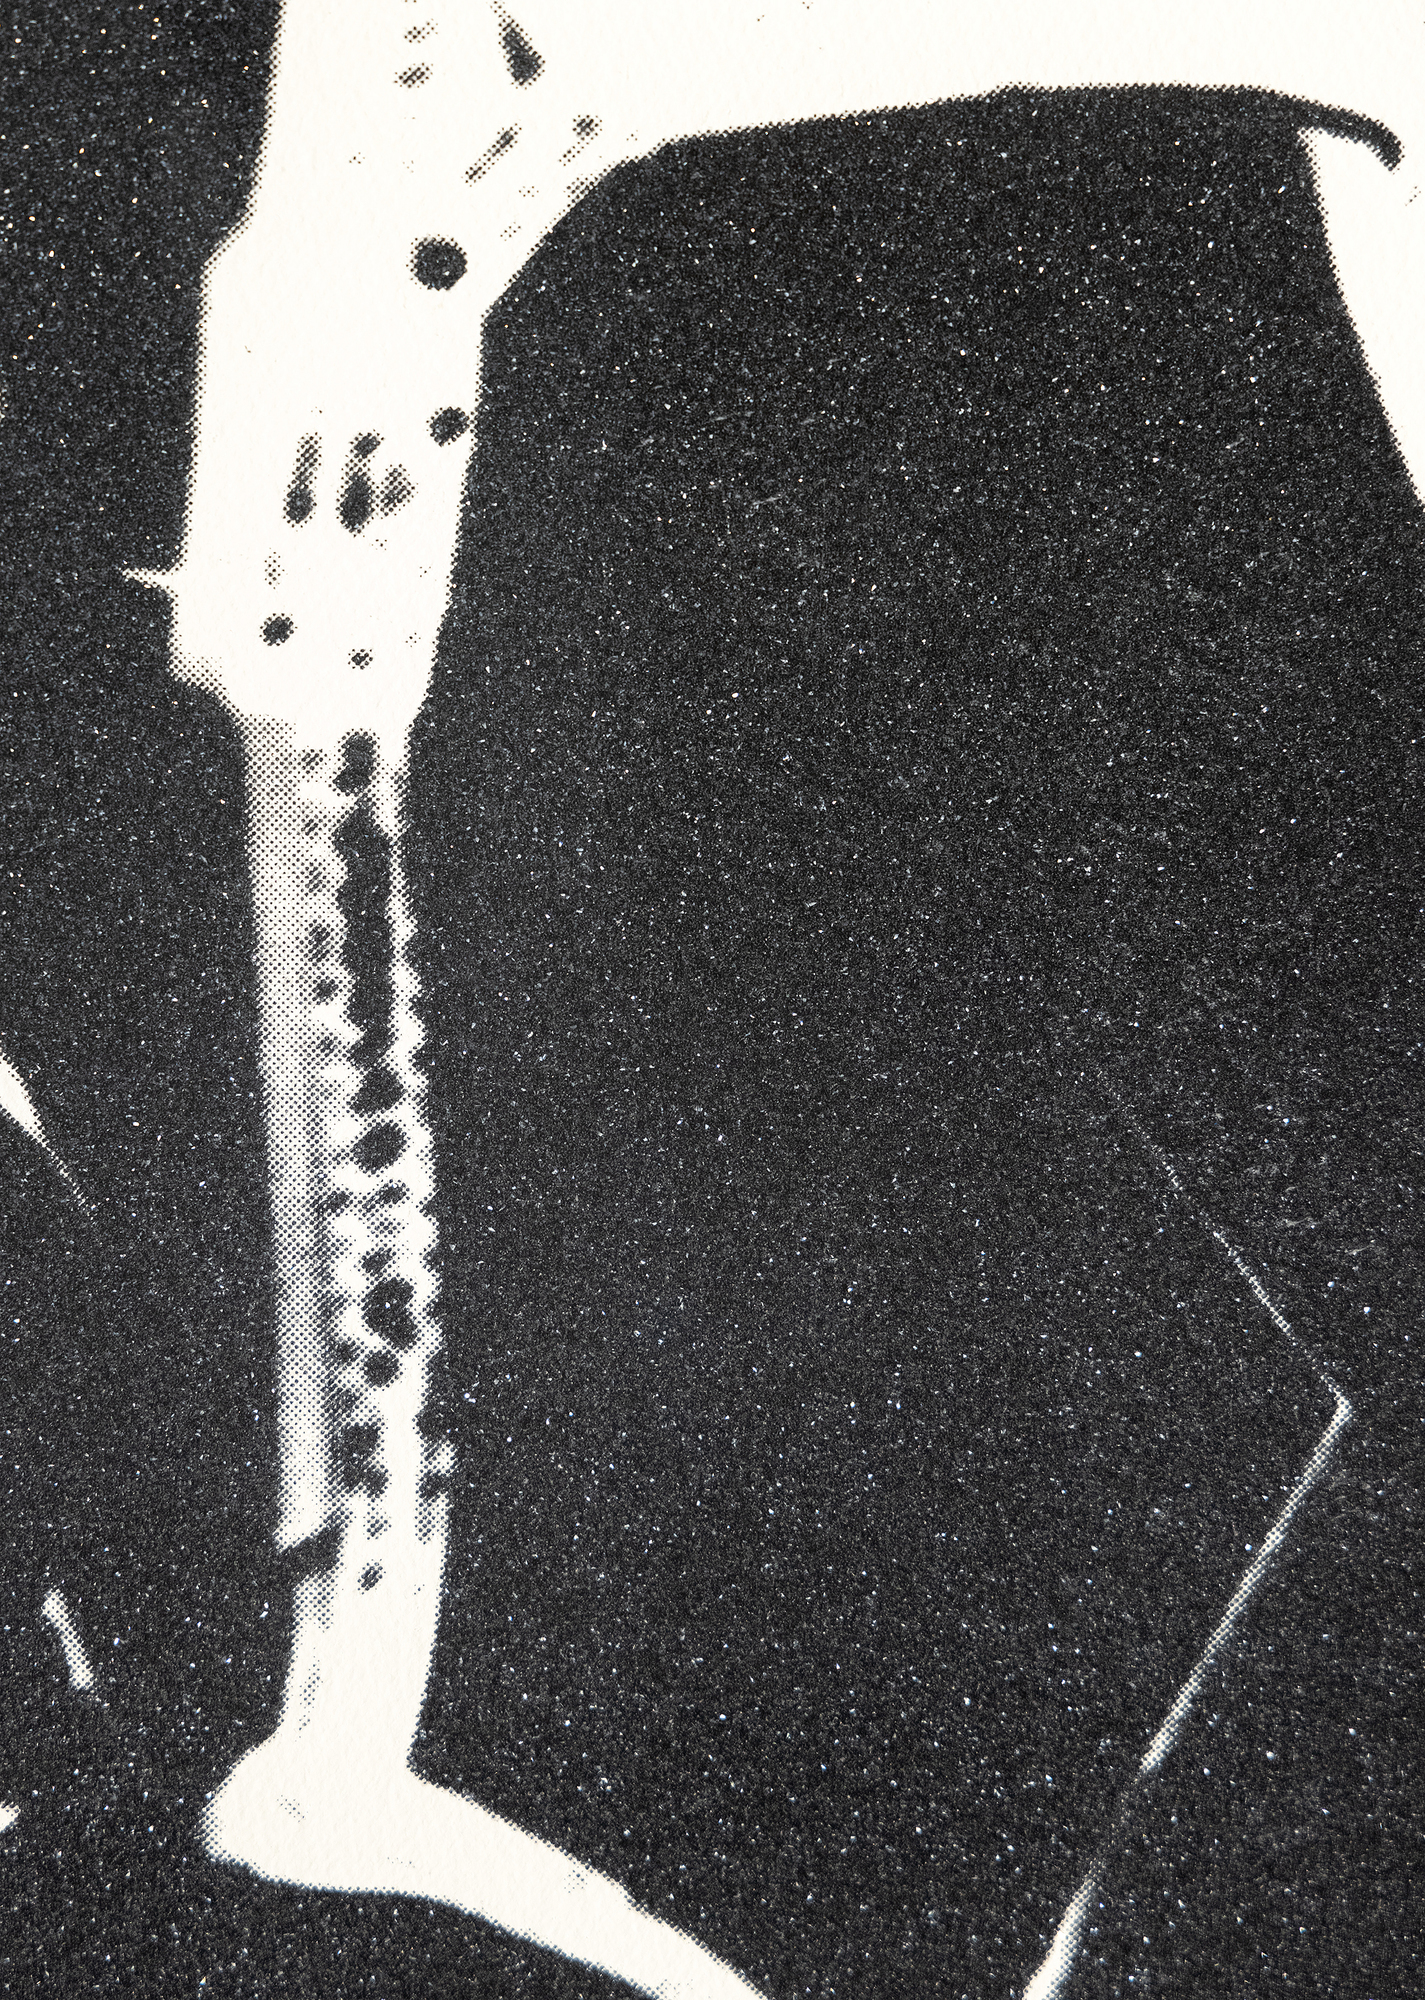 Andy Warhol es sinónimo del arte estadounidense de la segunda mitad del siglo XX y es conocido por sus icónicos retratos y productos de consumo, que mezclan la cultura popular y las bellas artes, redefiniendo lo que puede ser el arte y cómo nos acercamos a él. Aunque muchas de las obras de Warhol no representan a personas famosas, sus representaciones de objetos inanimados elevan a sus sujetos a un nivel de celebridad. Warhol representó por primera vez los zapatos al principio de su carrera, cuando trabajaba como ilustrador de moda, y volvió a tratar el tema en la década de 1980, combinando su fascinación por el consumismo y el glamour. Con su constante deseo de fusionar la alta y la baja cultura, Warhol eligió destacar algo tan omnipresente como los zapatos. El tema puede denotar pobreza o riqueza, función o moda. Warhol da un toque de glamour a los zapatos, cubriéndolos con una pátina de polvo de diamante brillante, difuminando aún más el significado entre la necesidad utilitaria y la pieza estilizada.